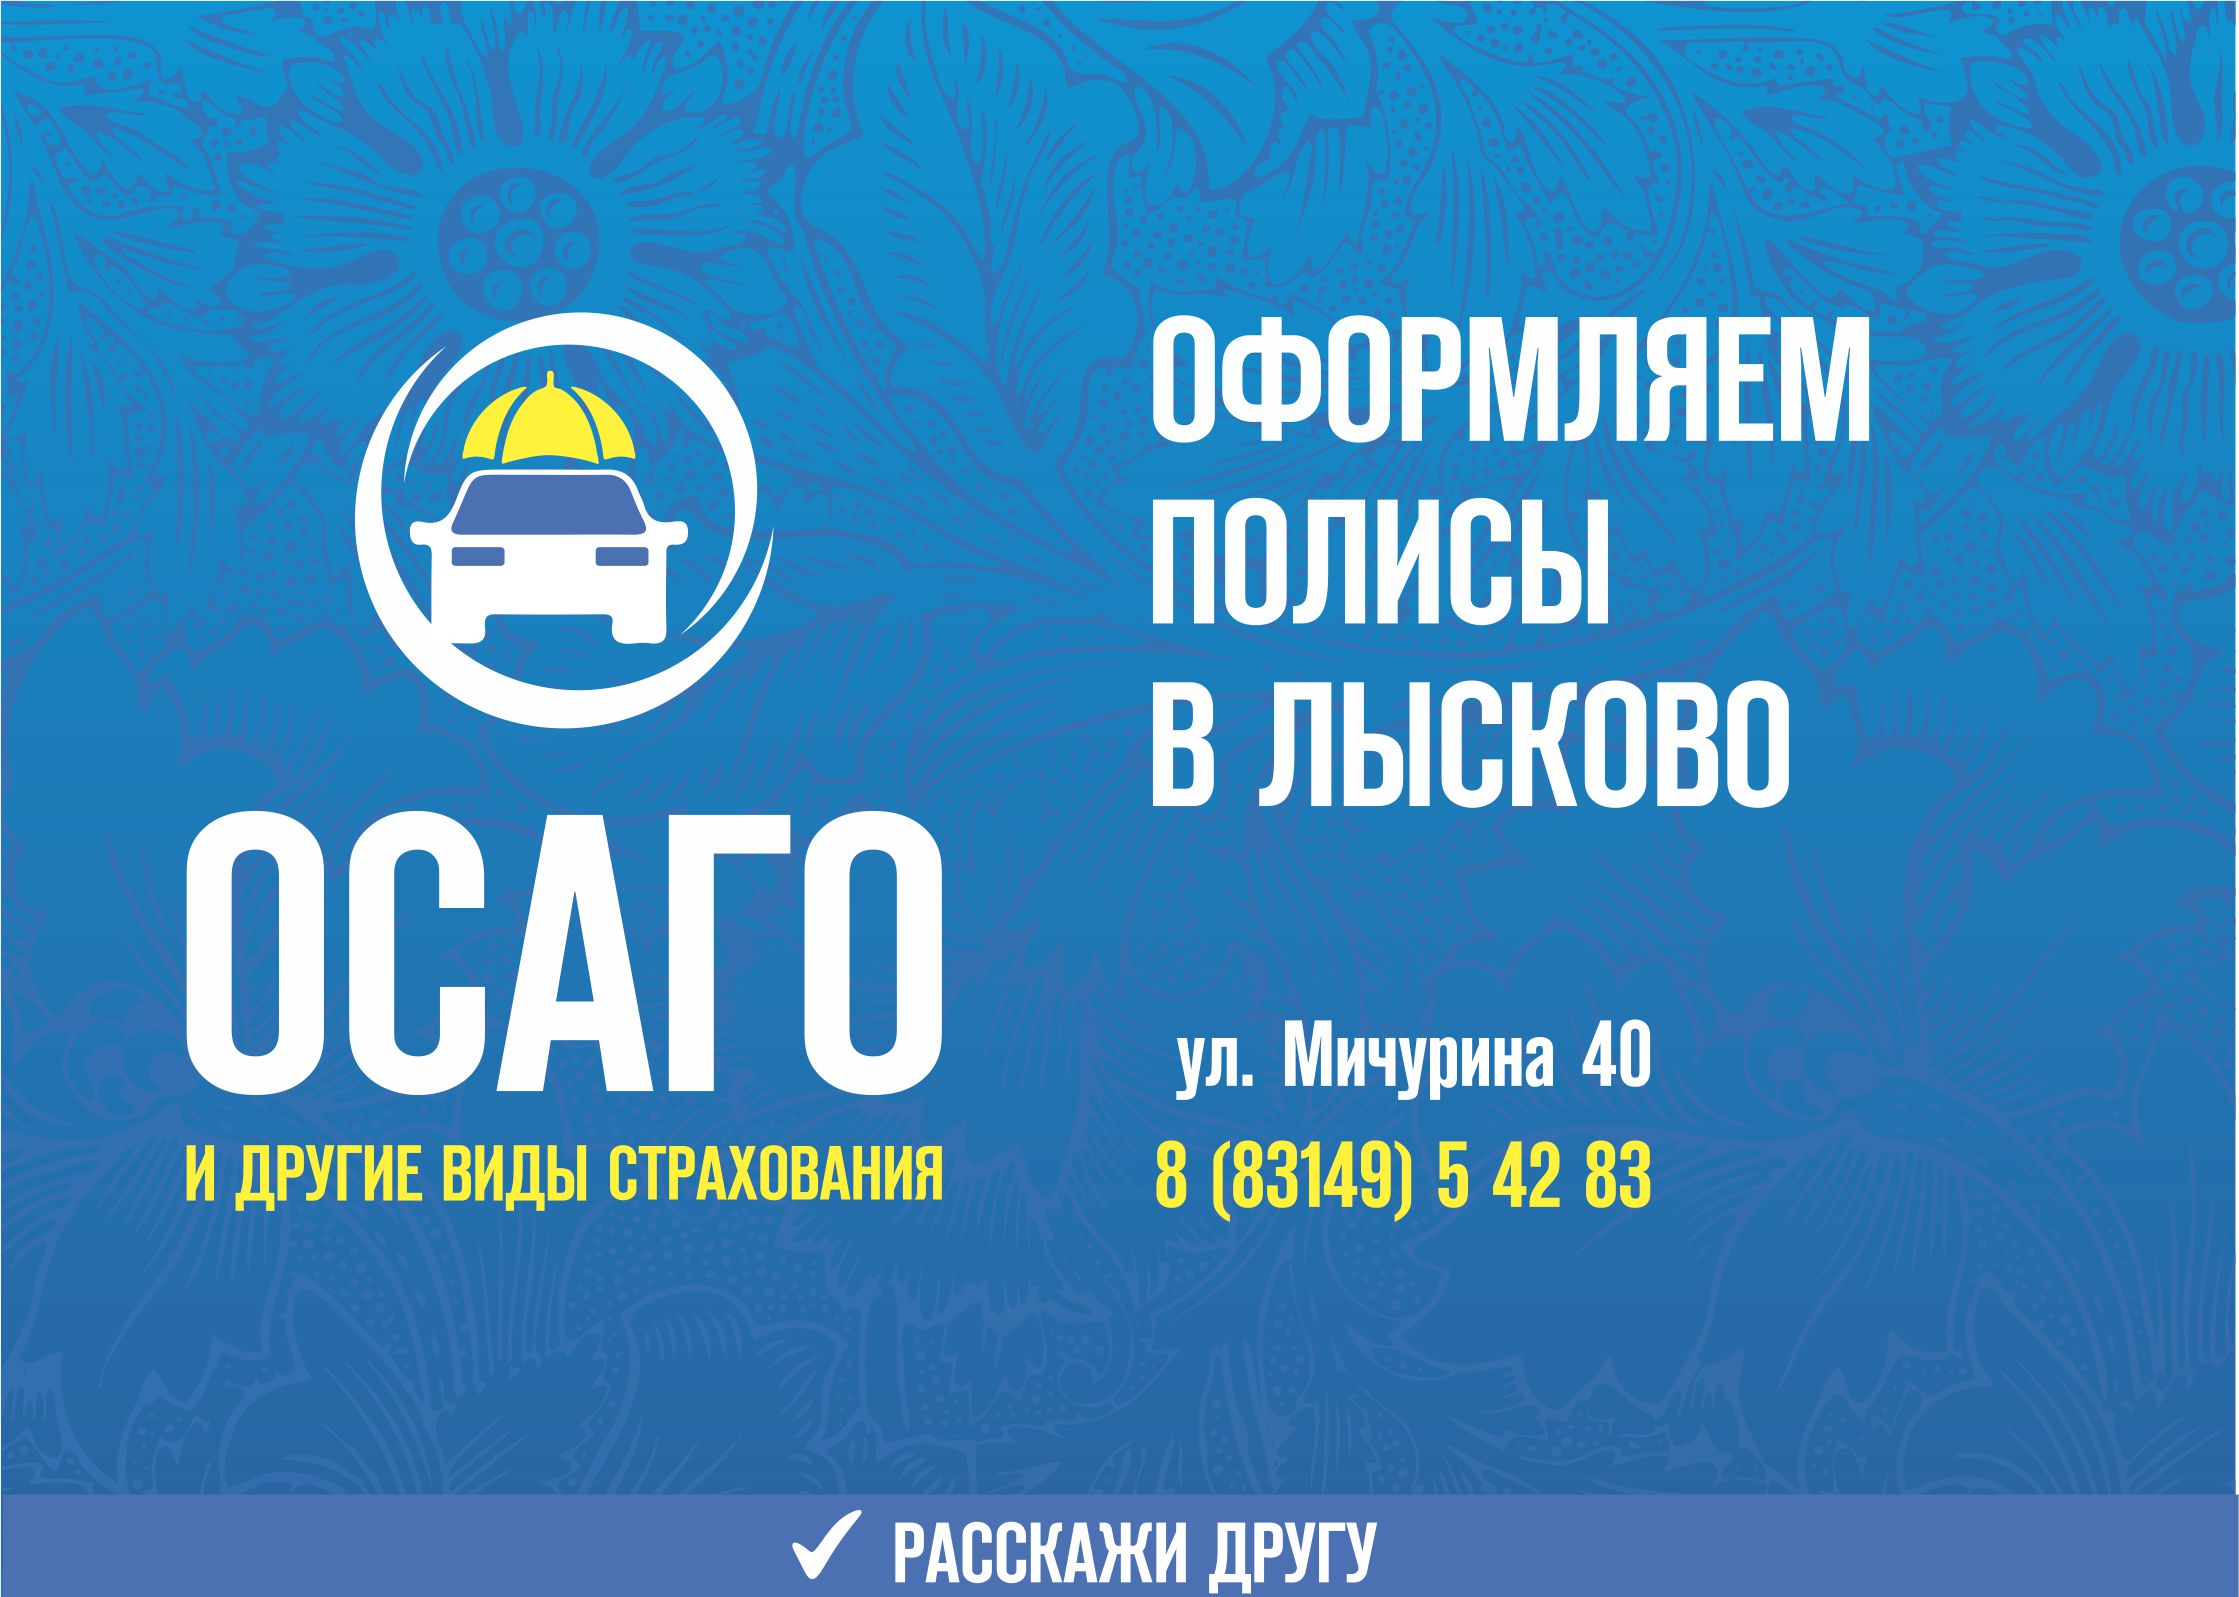 Продажа полисов ОСАГО в Лысково на мотоциклы, такси, спецтехнику, грузовики, легковые машины, иномарки. Оформление и выдача полисов в день обращения.